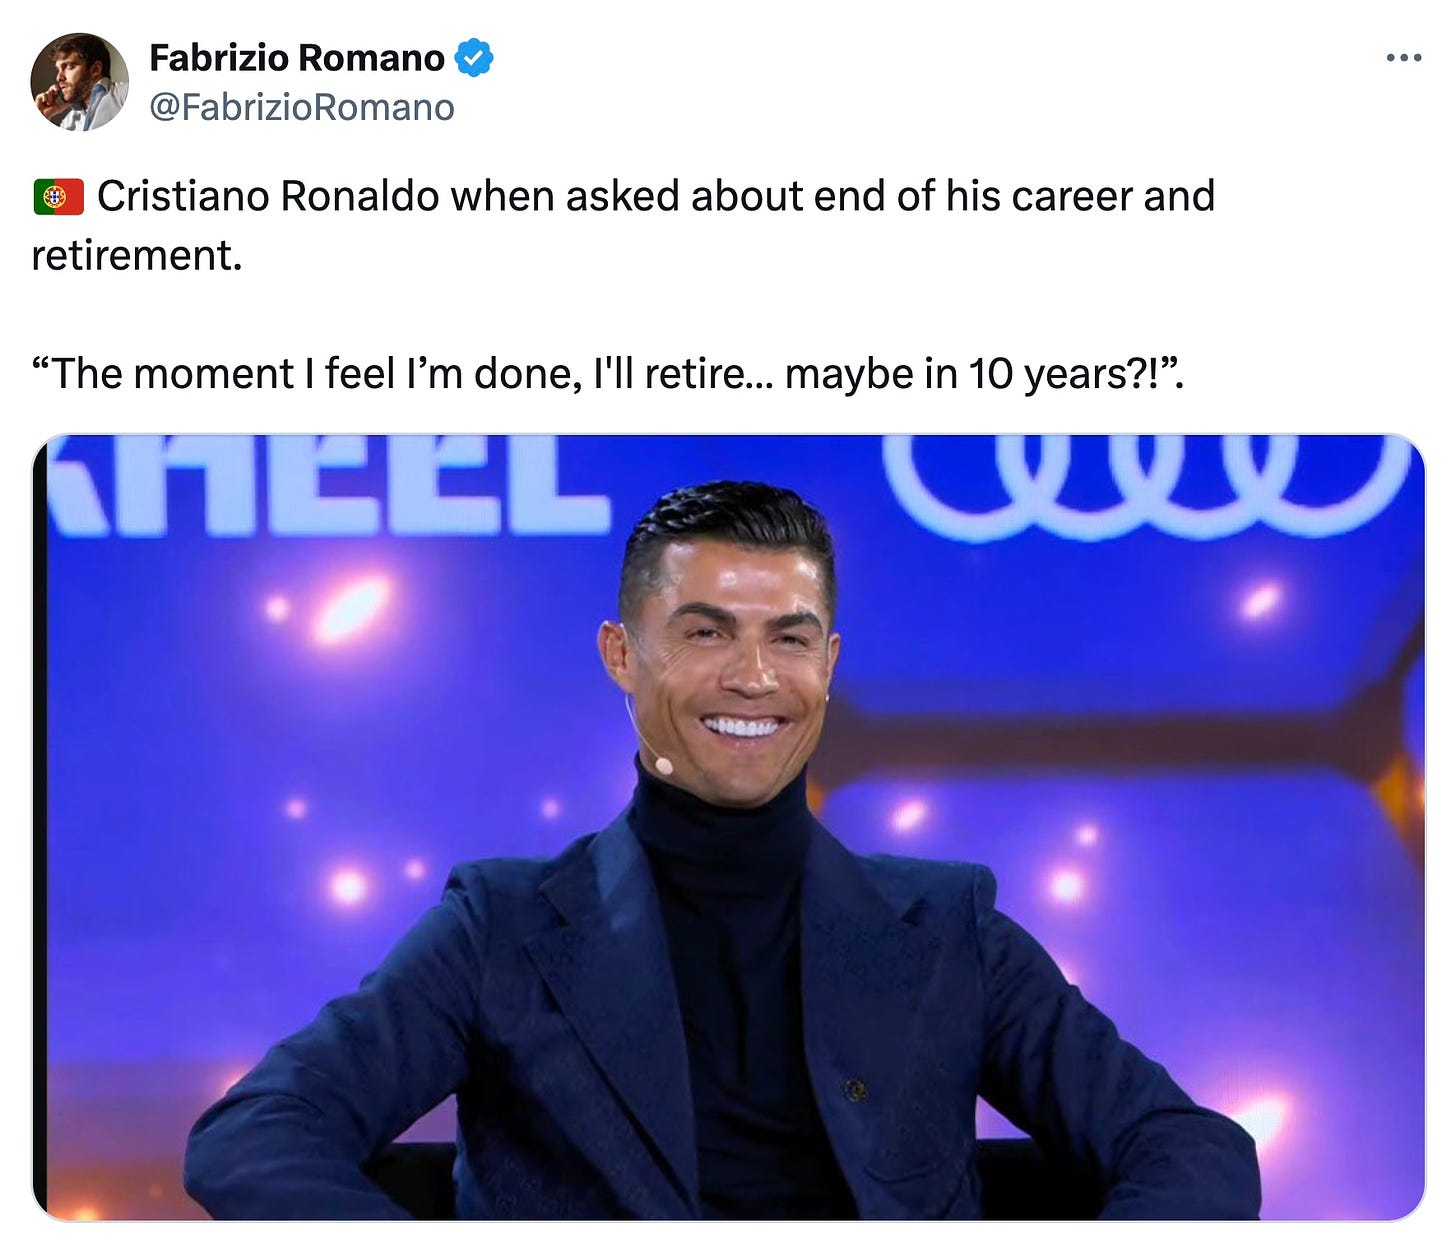 A tweet by Fabrizio Romano about when Cristiano Ronaldo might retire